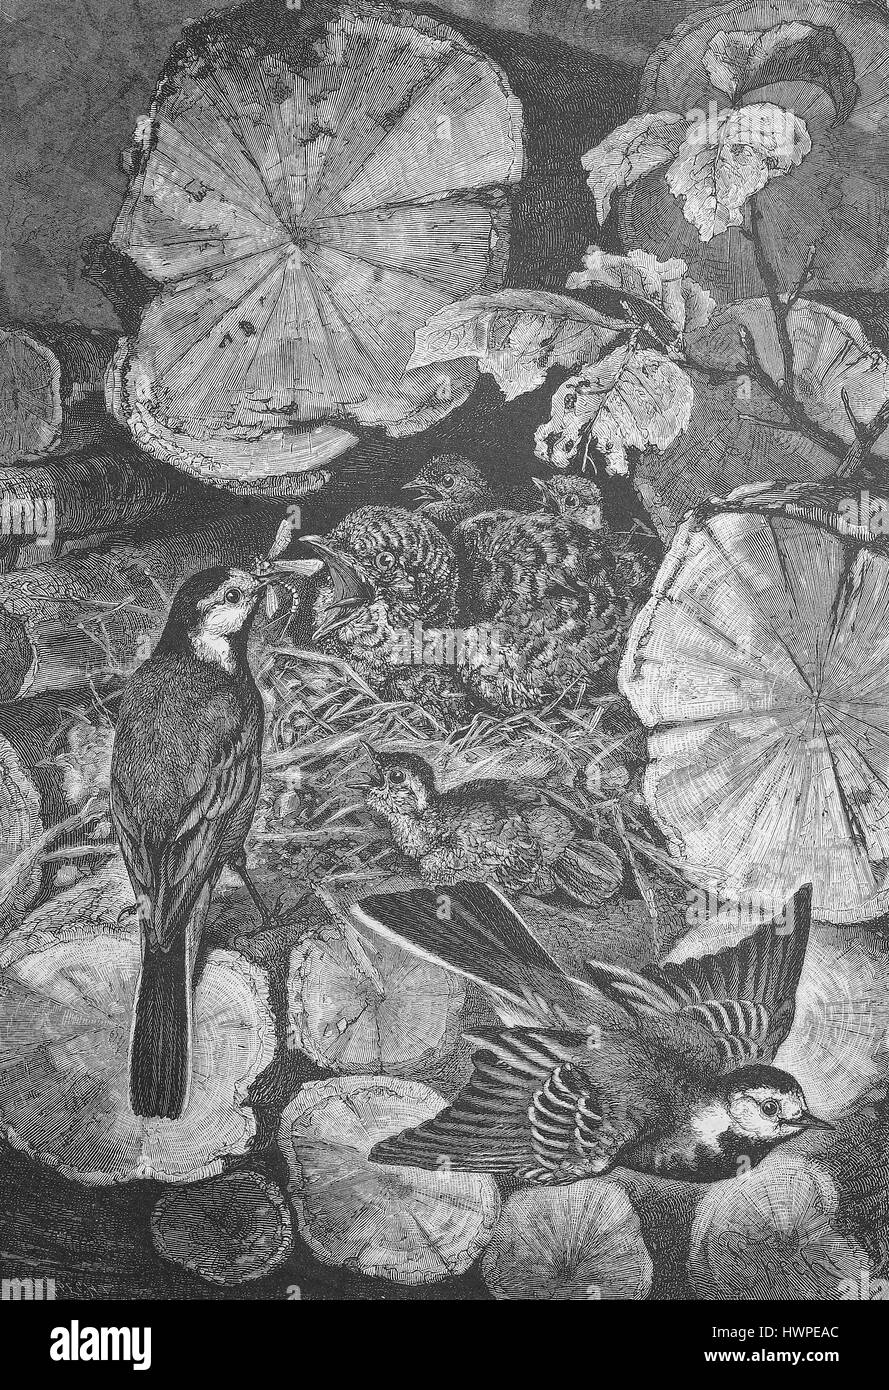 Giovane cuculo nel nido di un bianco Wagtail, il cuculo, Cuculus canorus, White Wagtail, Motacilla alba, riproduzione di un originale xilografia a partire dall'anno 1882, digitale migliorata Foto Stock